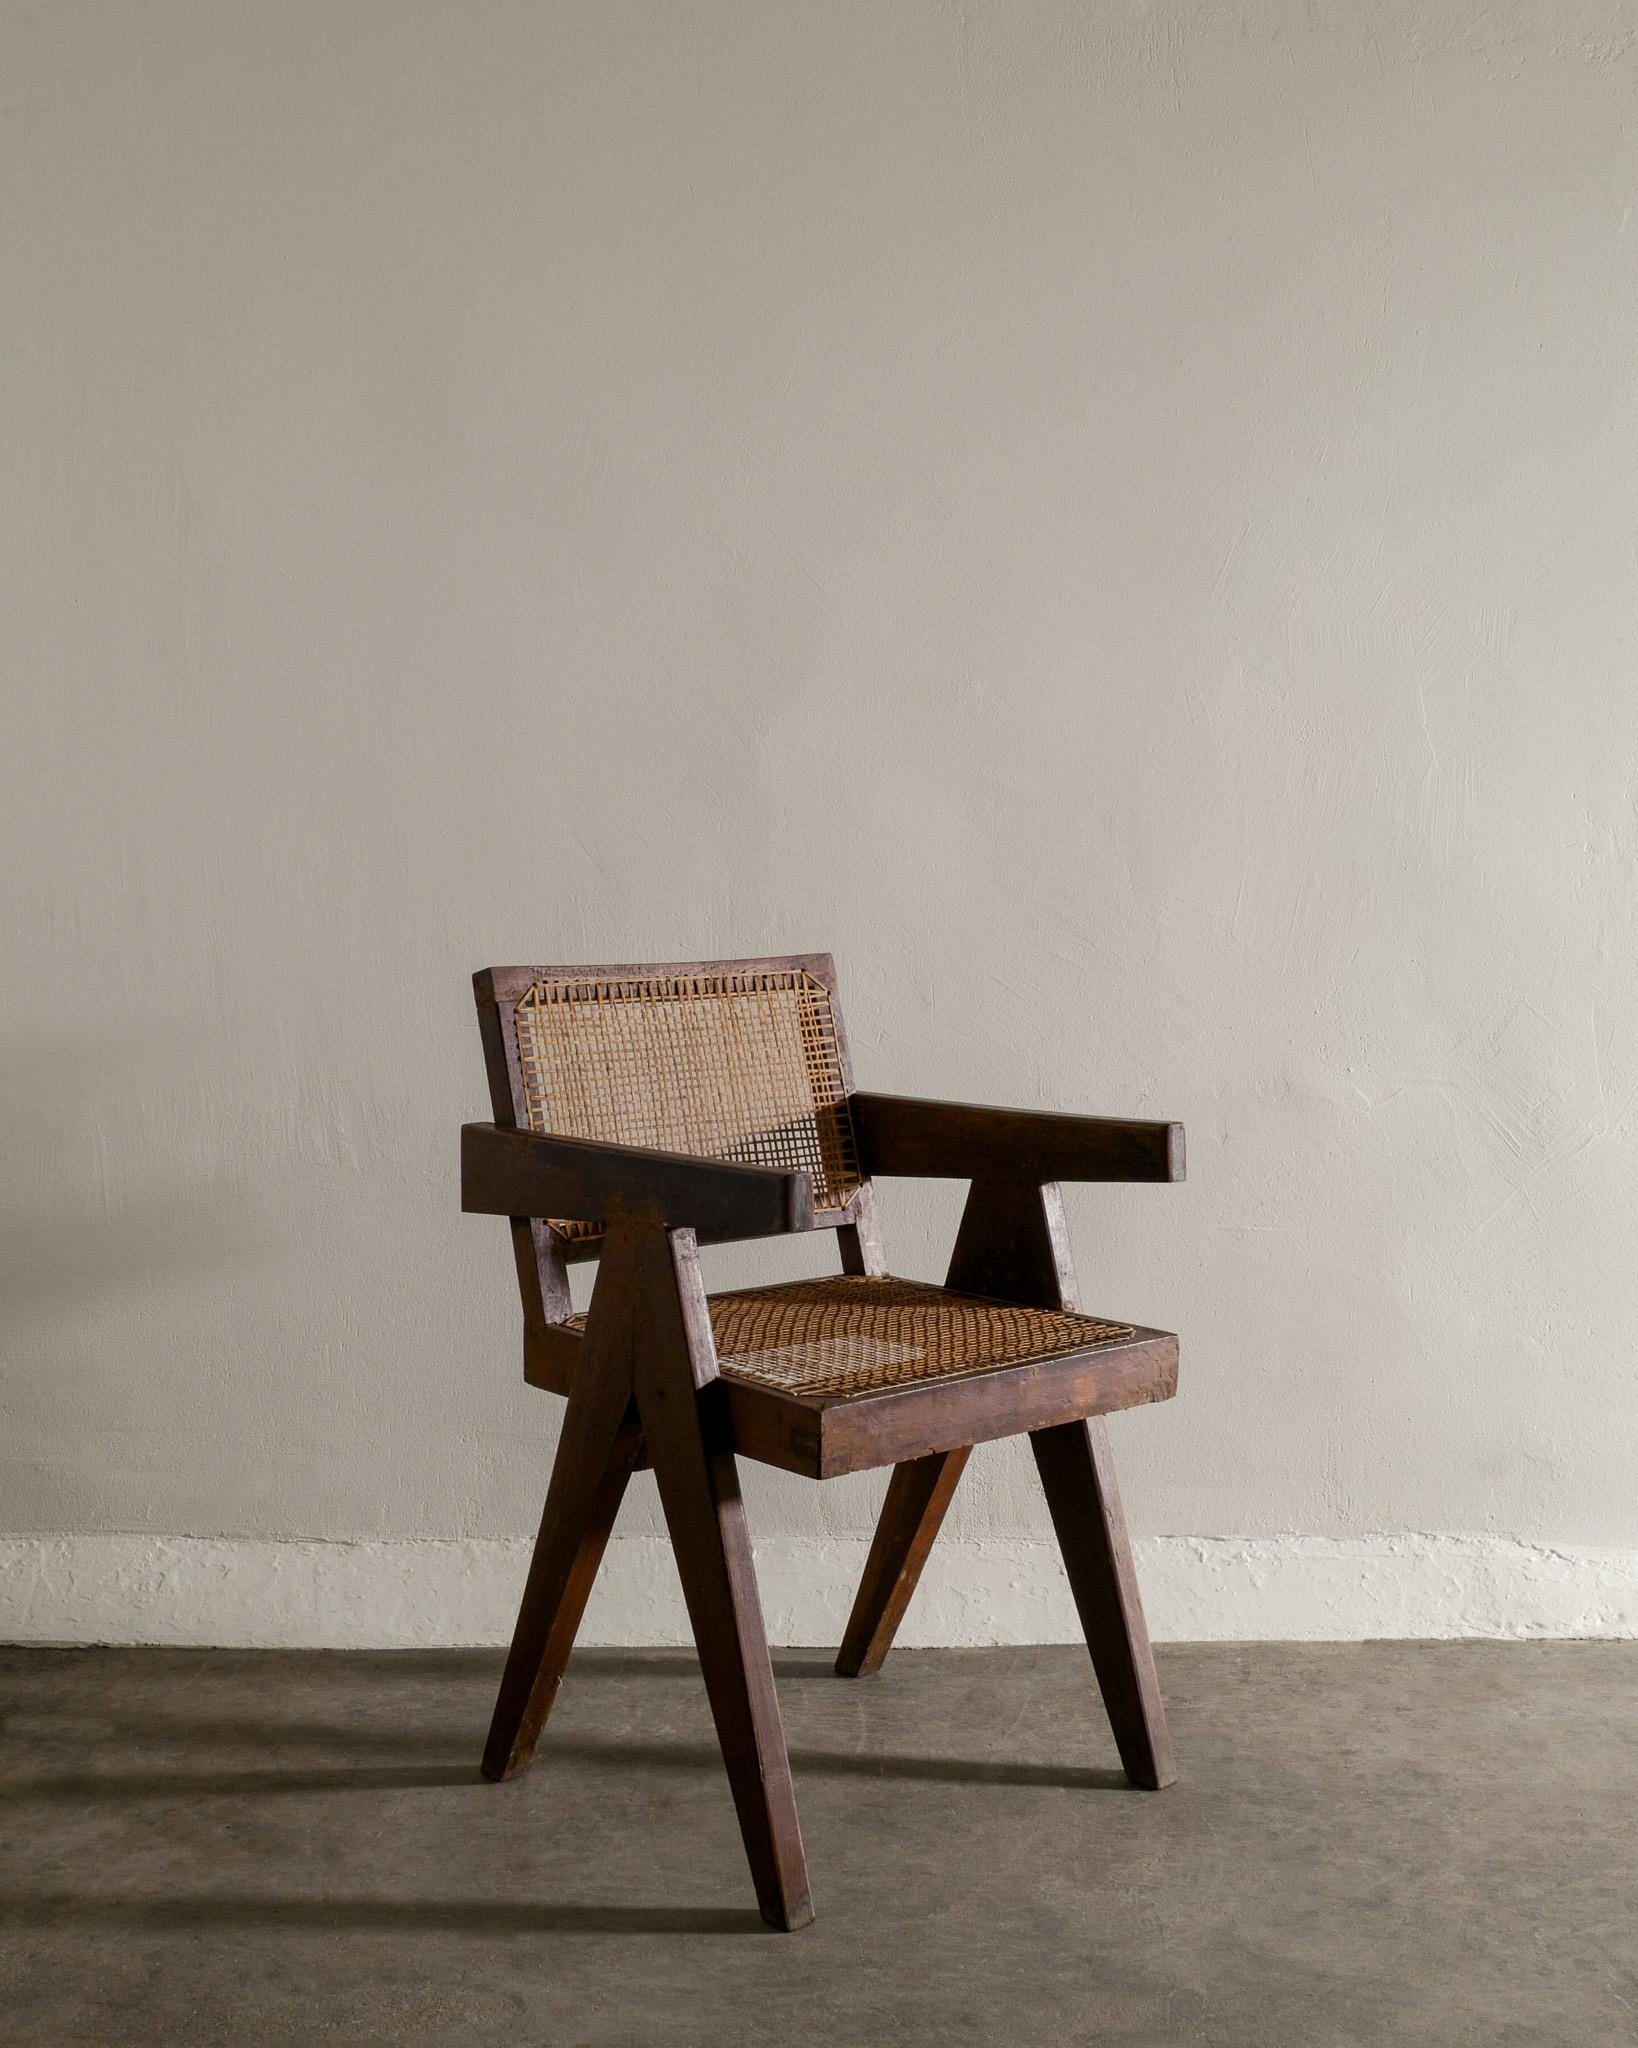 Seltener Bürostuhl aus der Mitte des Jahrhunderts aus massivem gebeiztem Teakholz und Rattan von Pierre Jeanneret / Le Corbusier für ihr Chandigarh-Projekt in Indien in den 1950er Jahren. In gutem Vintage-Zustand. Signiert 